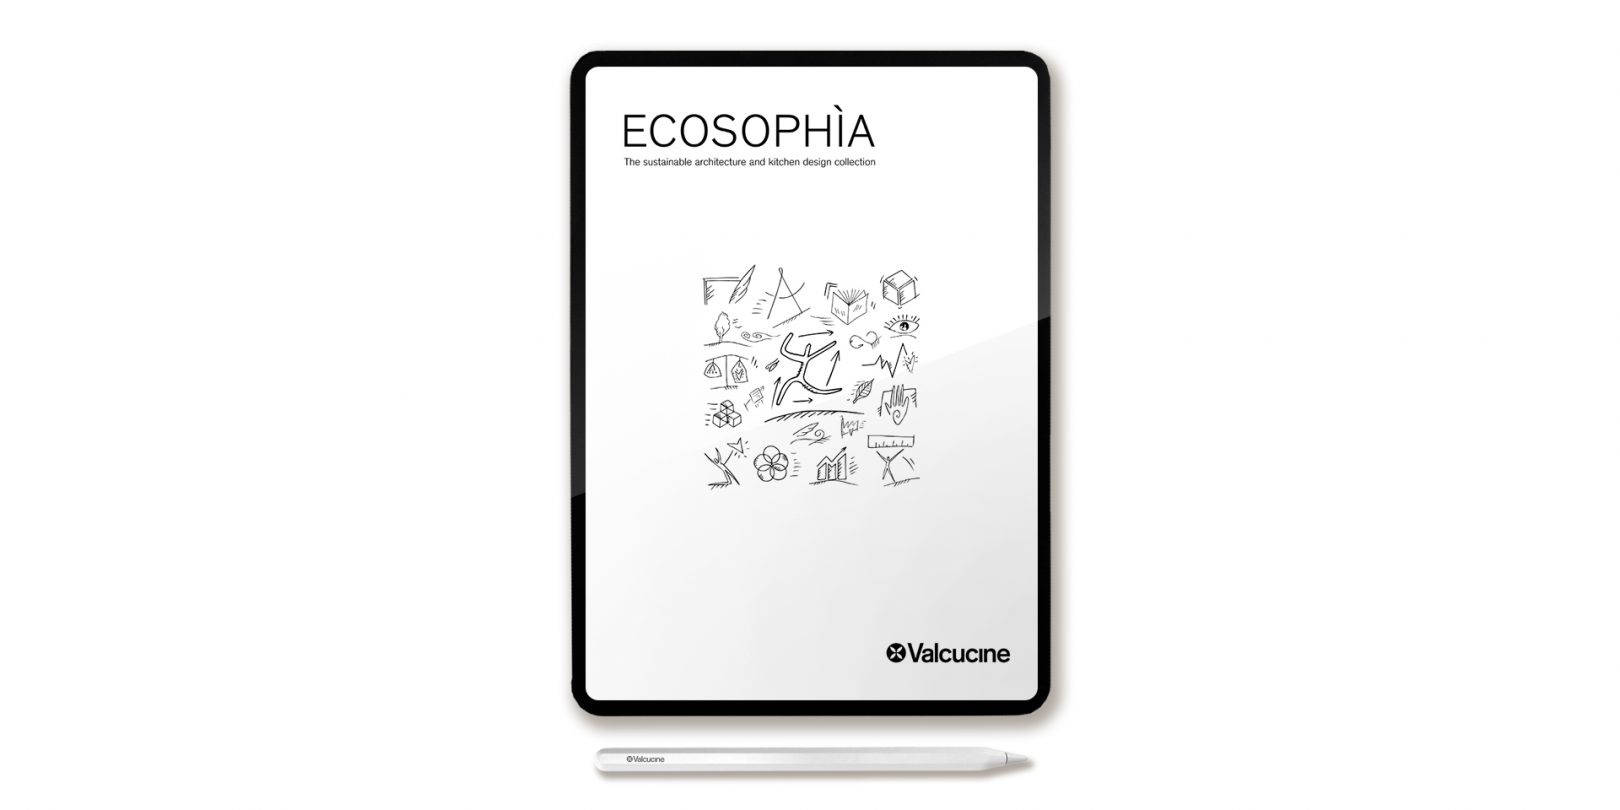 Ecosophia new Valcucine Catalogue